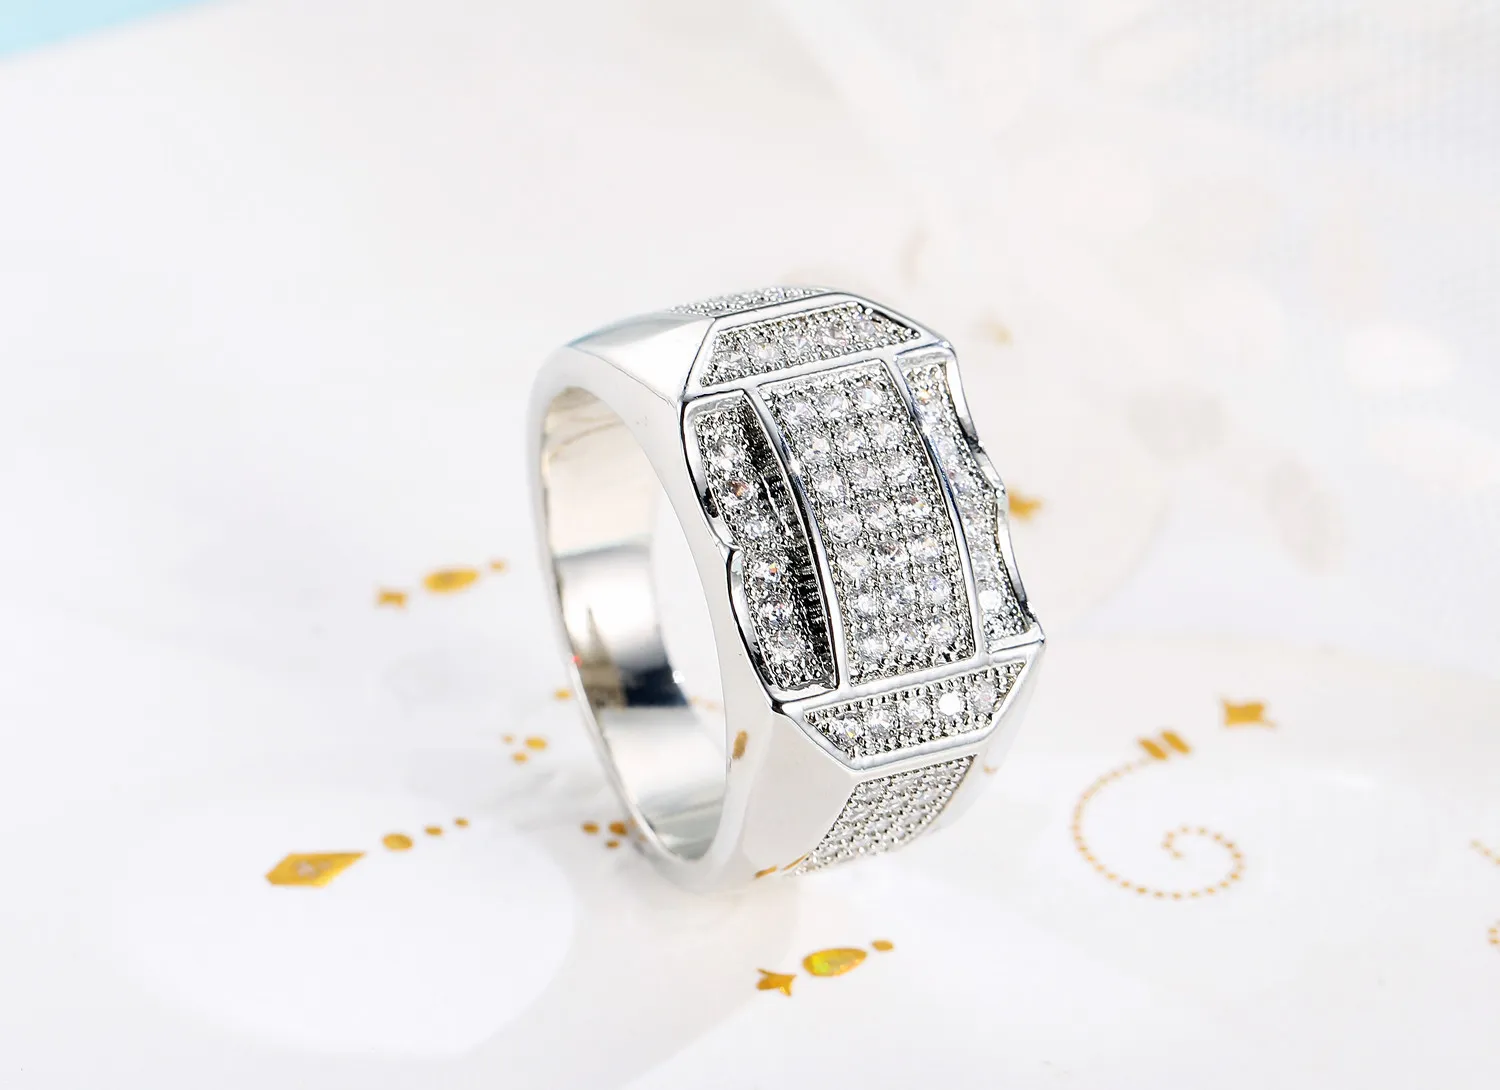 Omhxzj bütün grup halkalar Avrupa moda adamı düğün hediyesi lüks kare beyaz zirkon 18kt beyazlar altın gül altın yüzüğü rr46696355